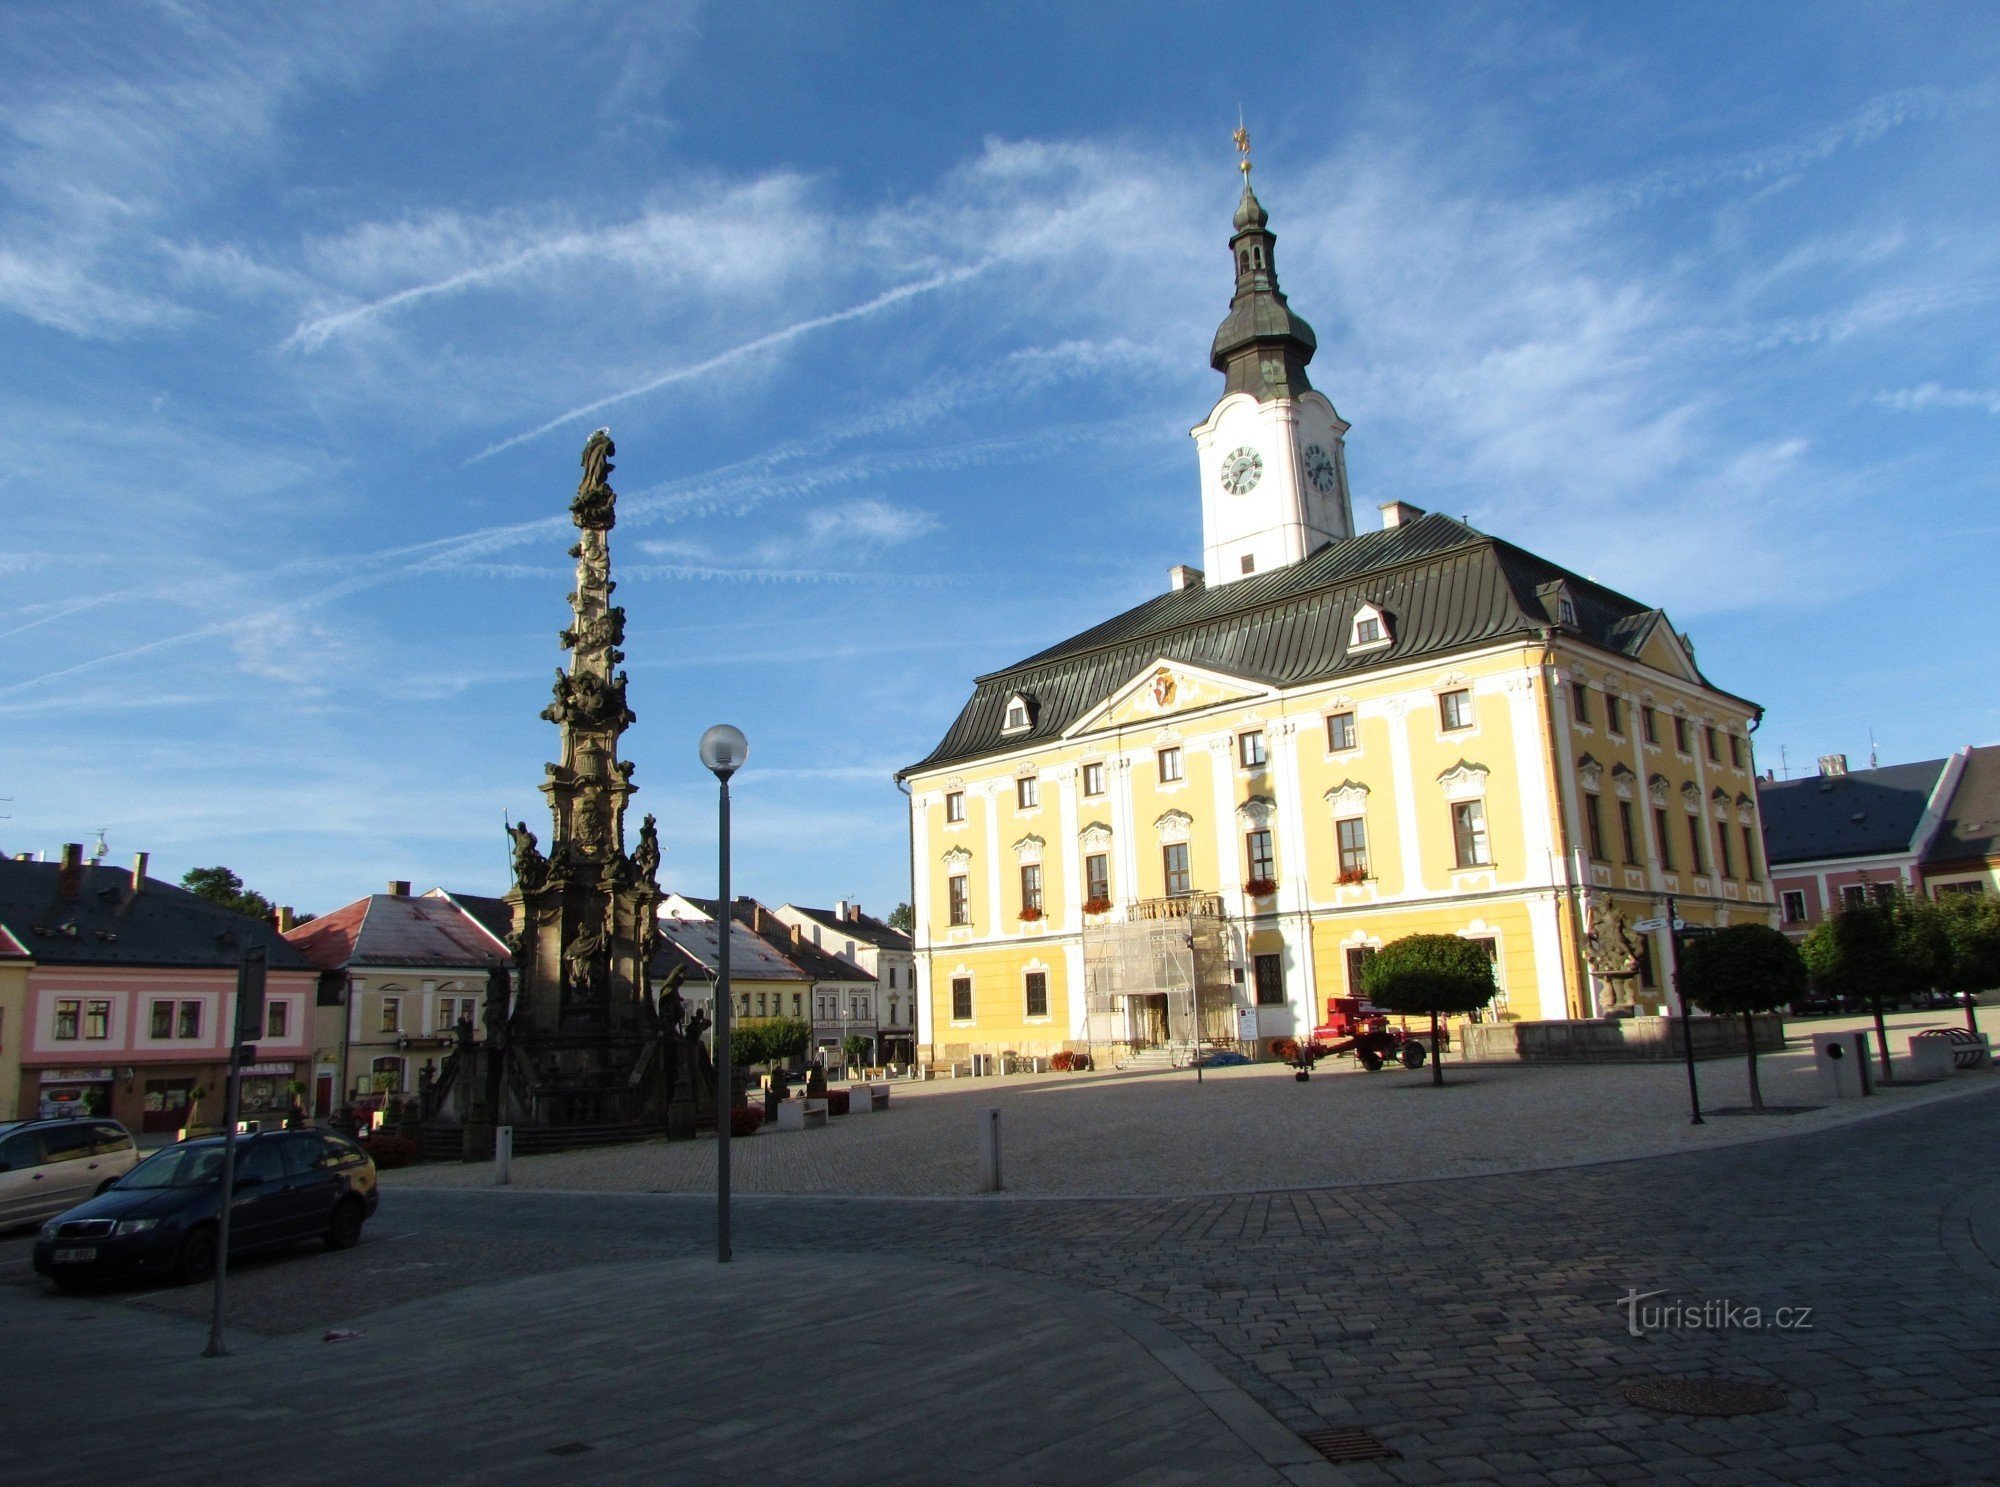 Town Hall in Polička